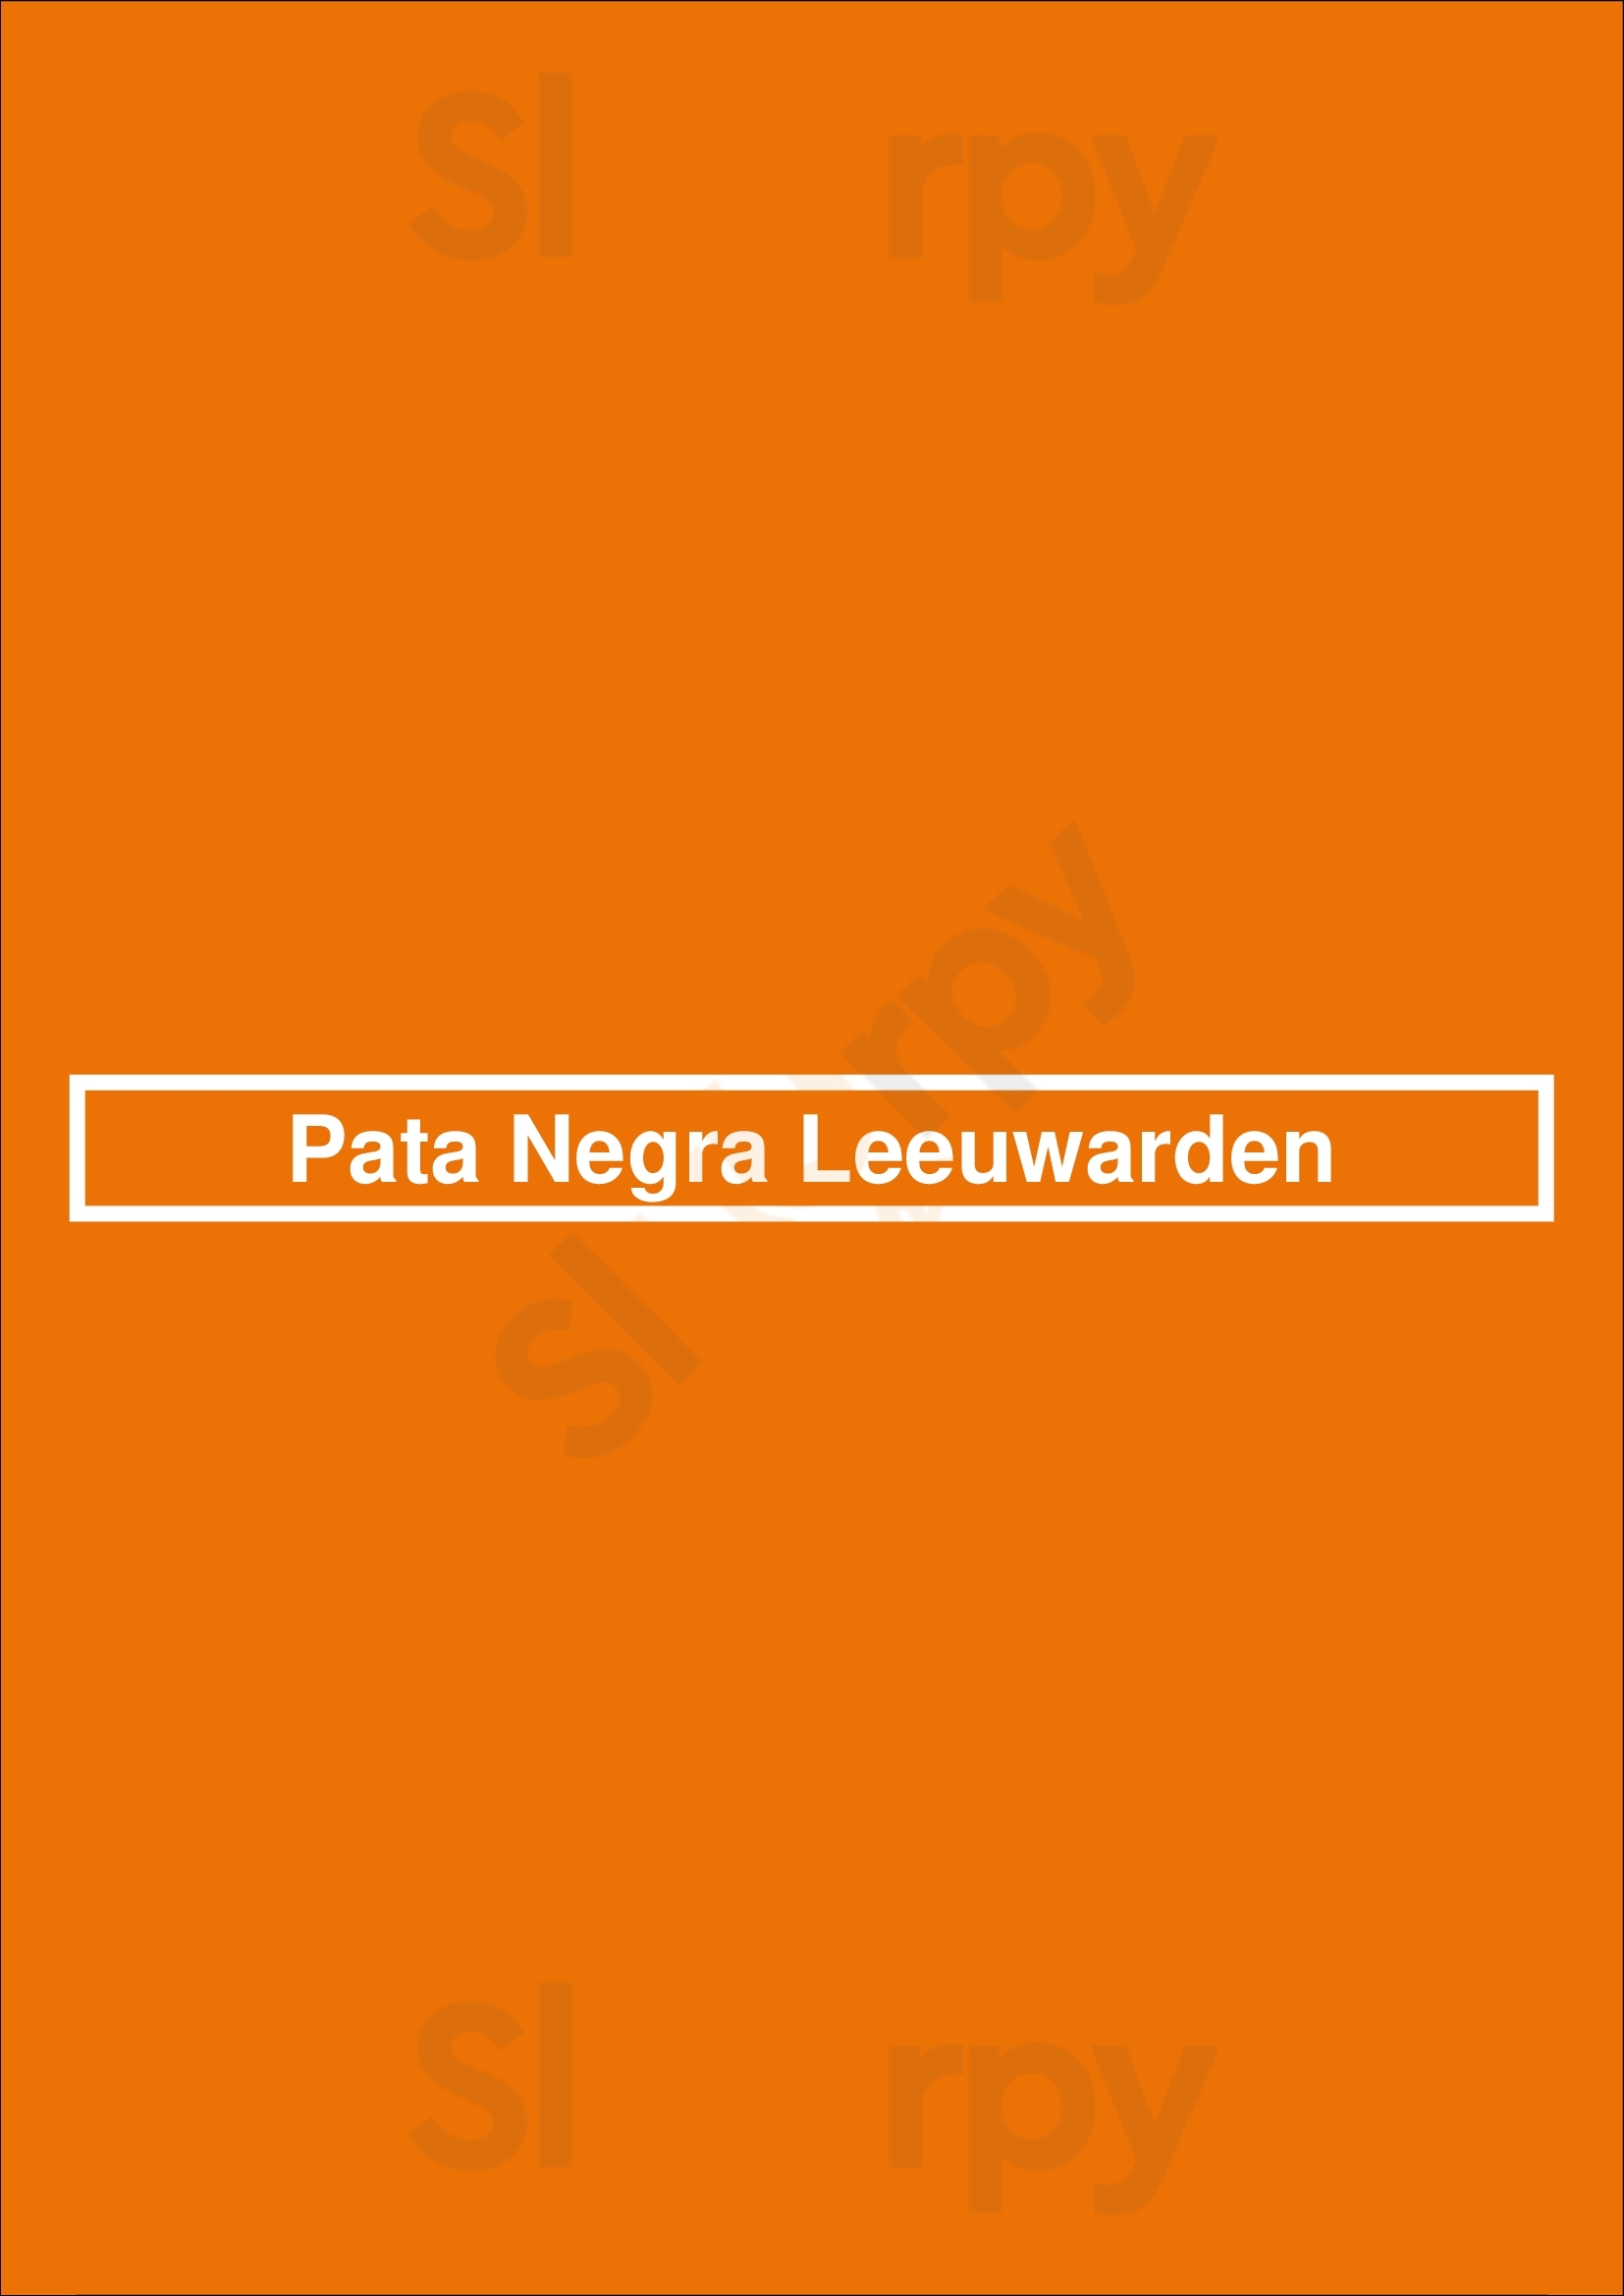 Pata Negra Leeuwarden Leeuwarden Menu - 1